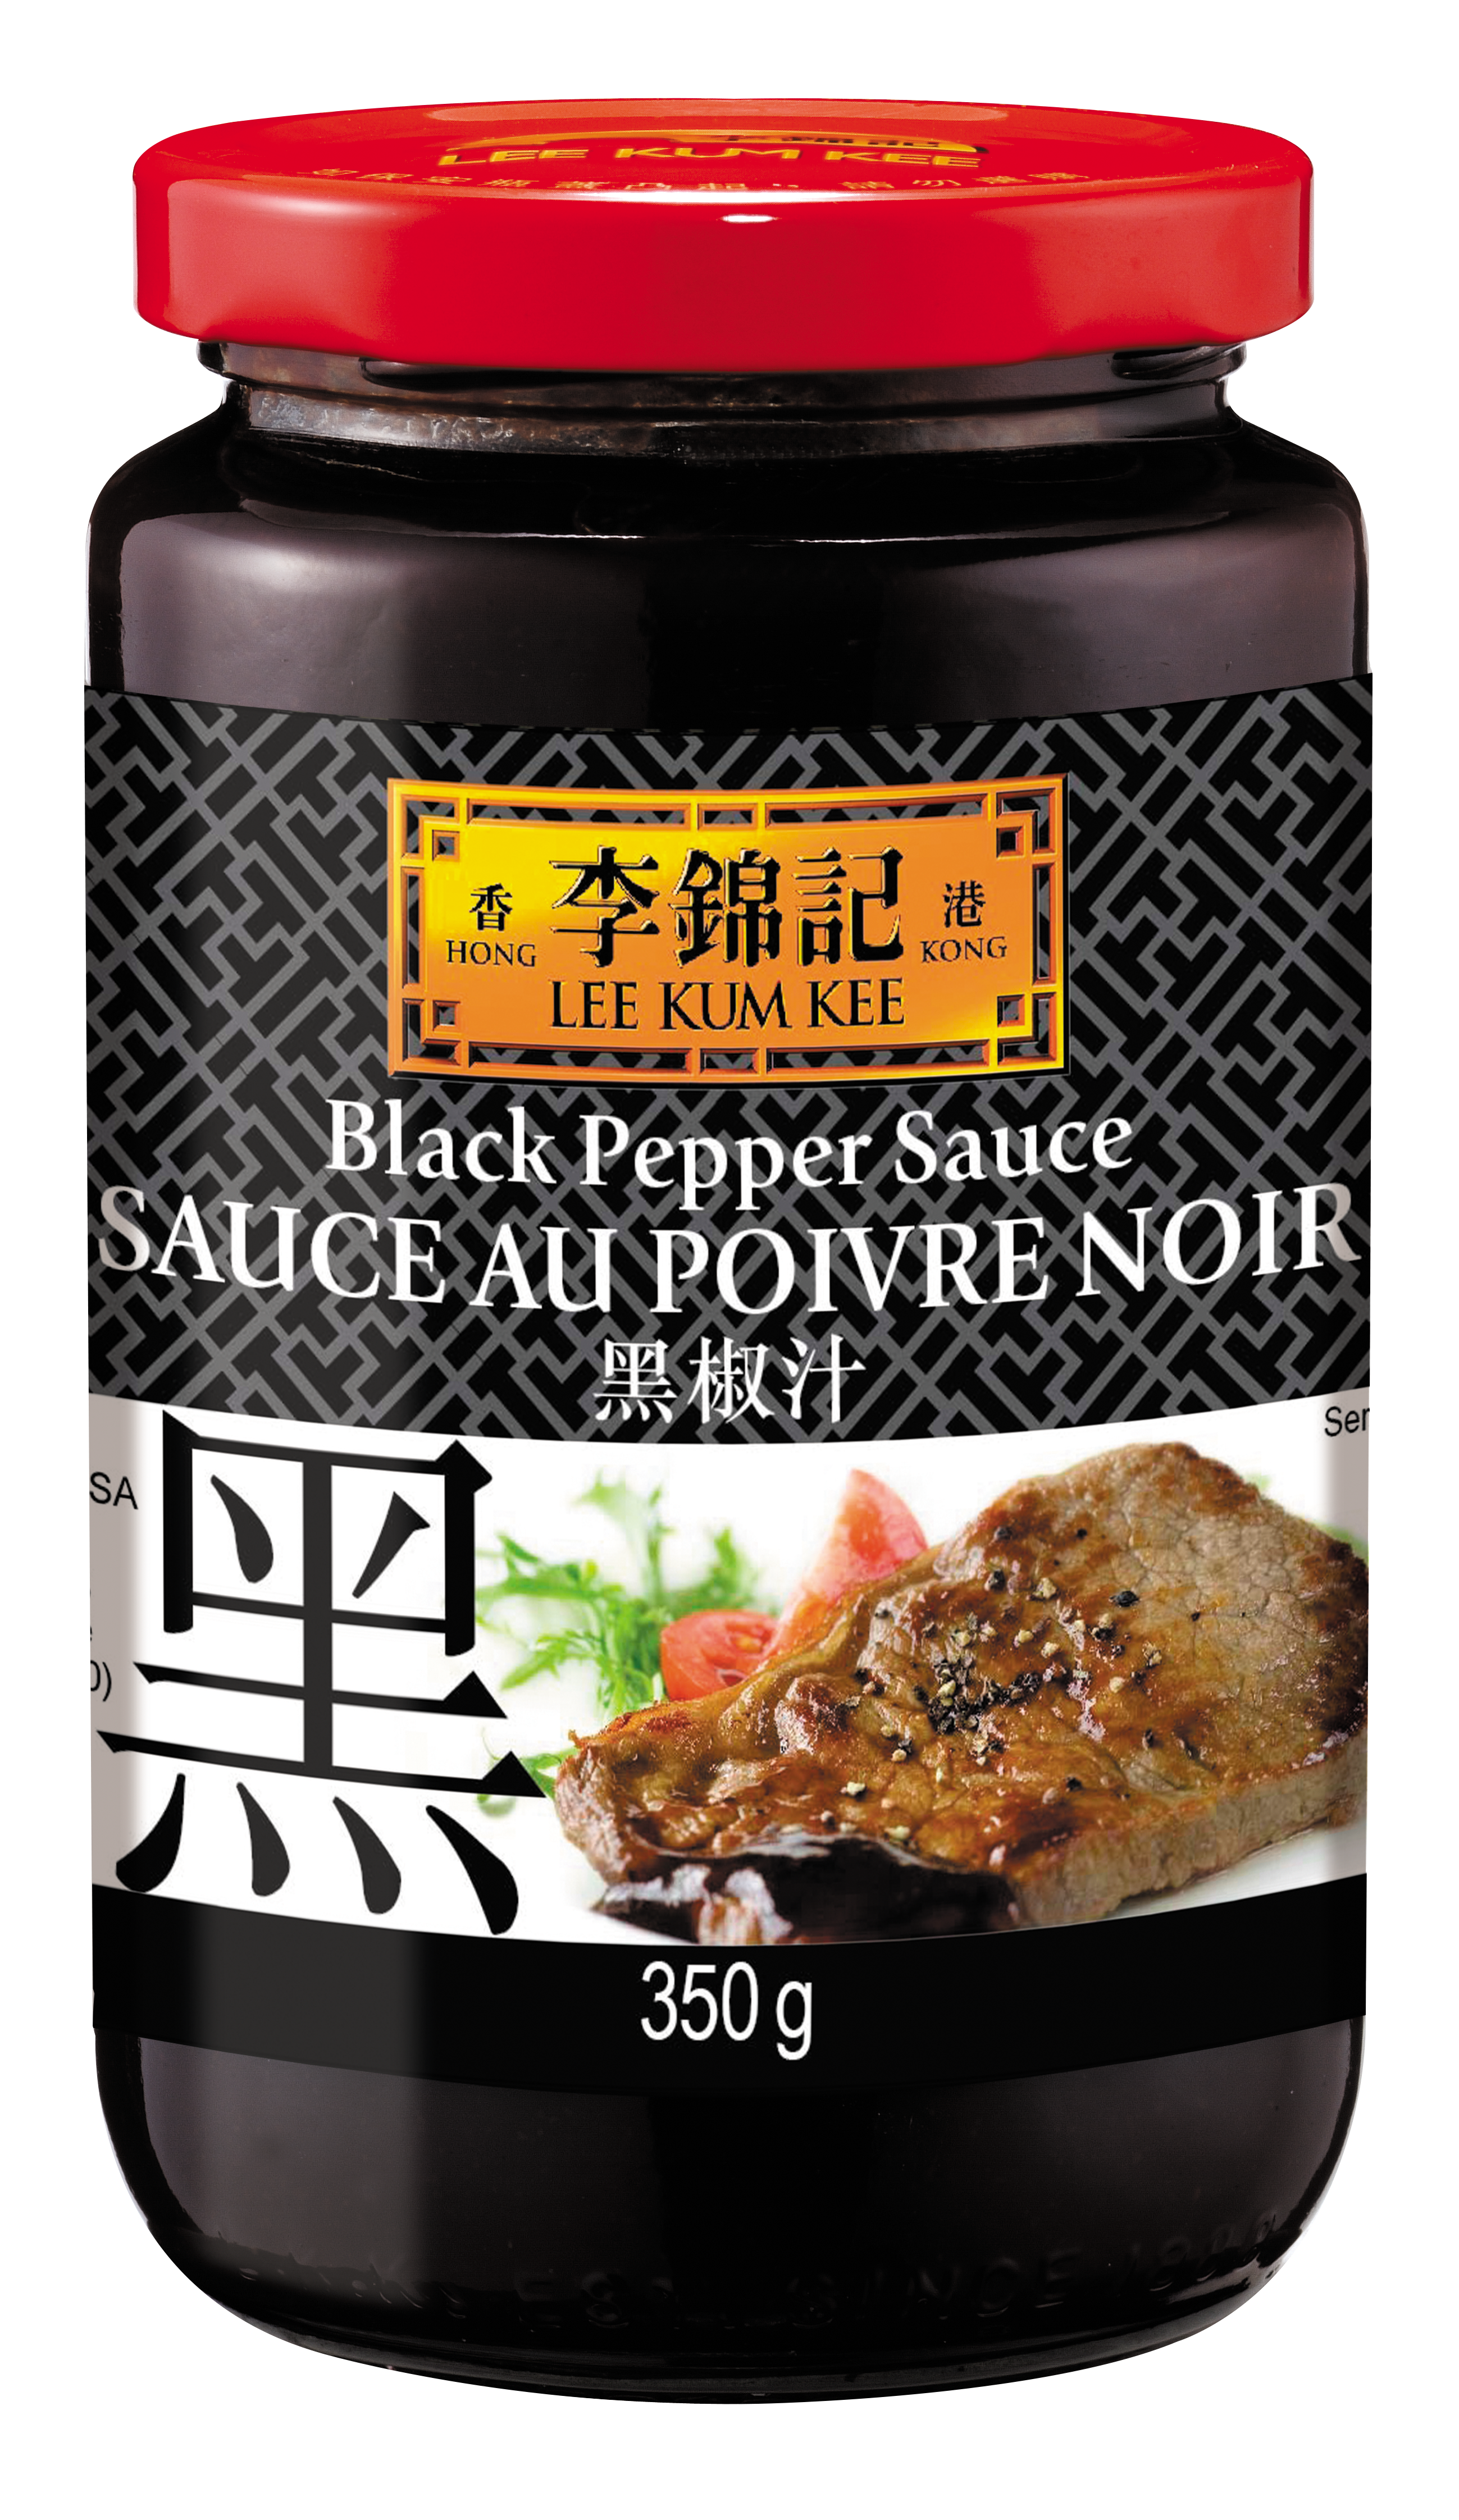 Sauce au poivre noir (黑椒汁) LEE KUM KEE - Épicerie sucrée et salée, Sauces -  Tang Frères